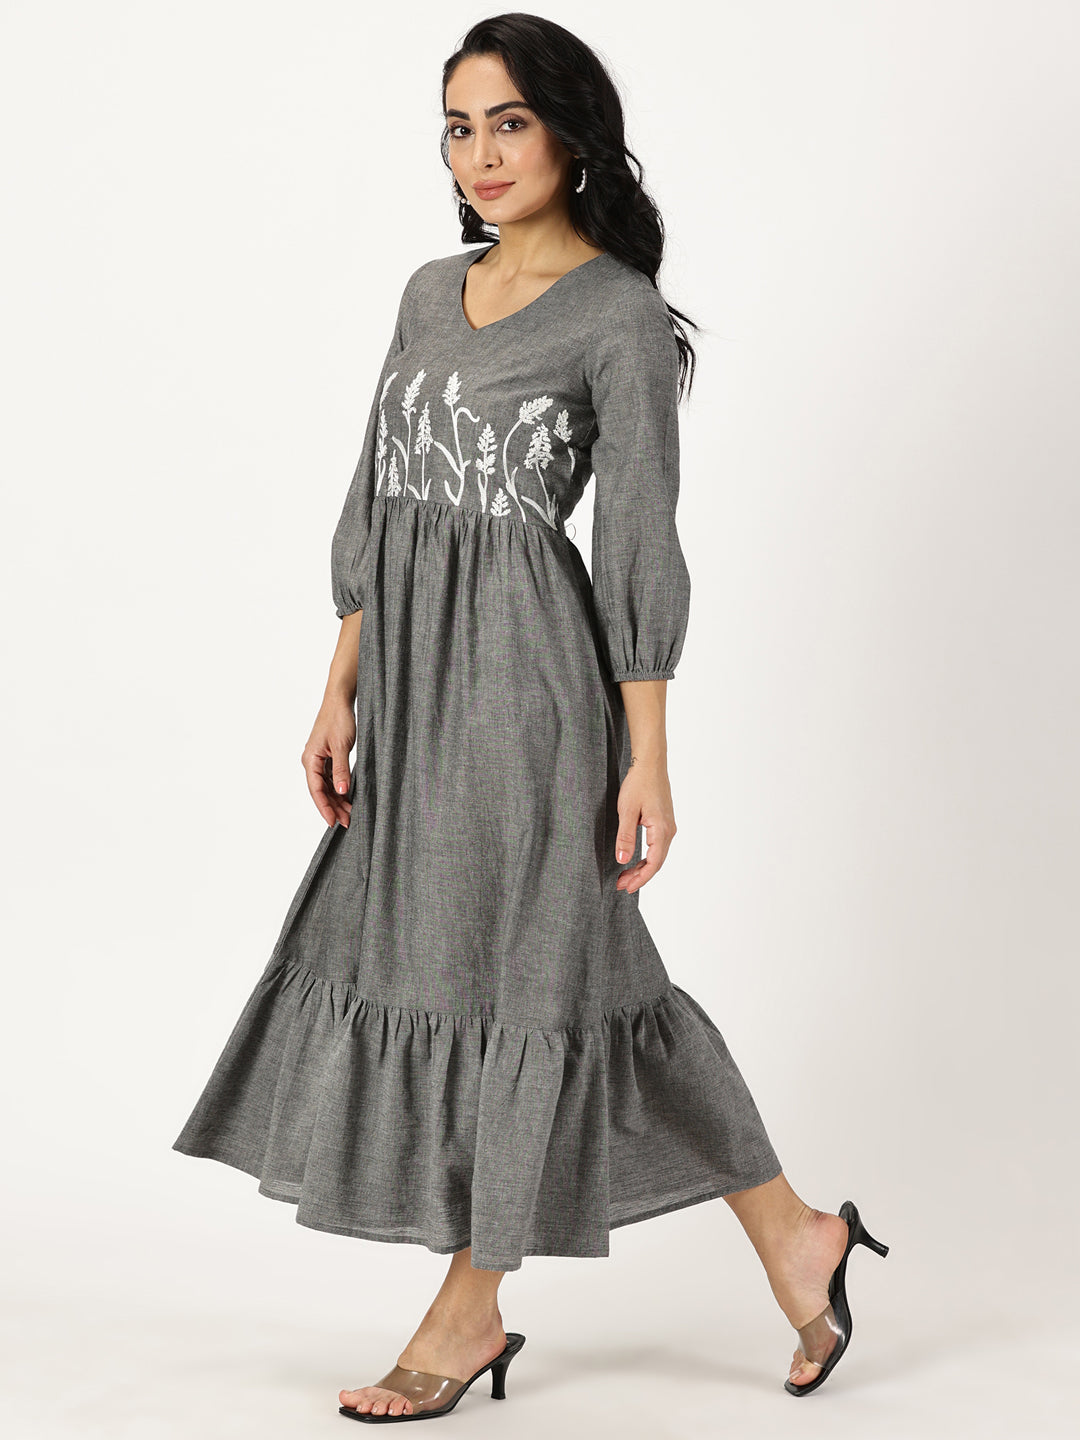 Melange Grey Boho Midi Dress with Yoke Embroidery